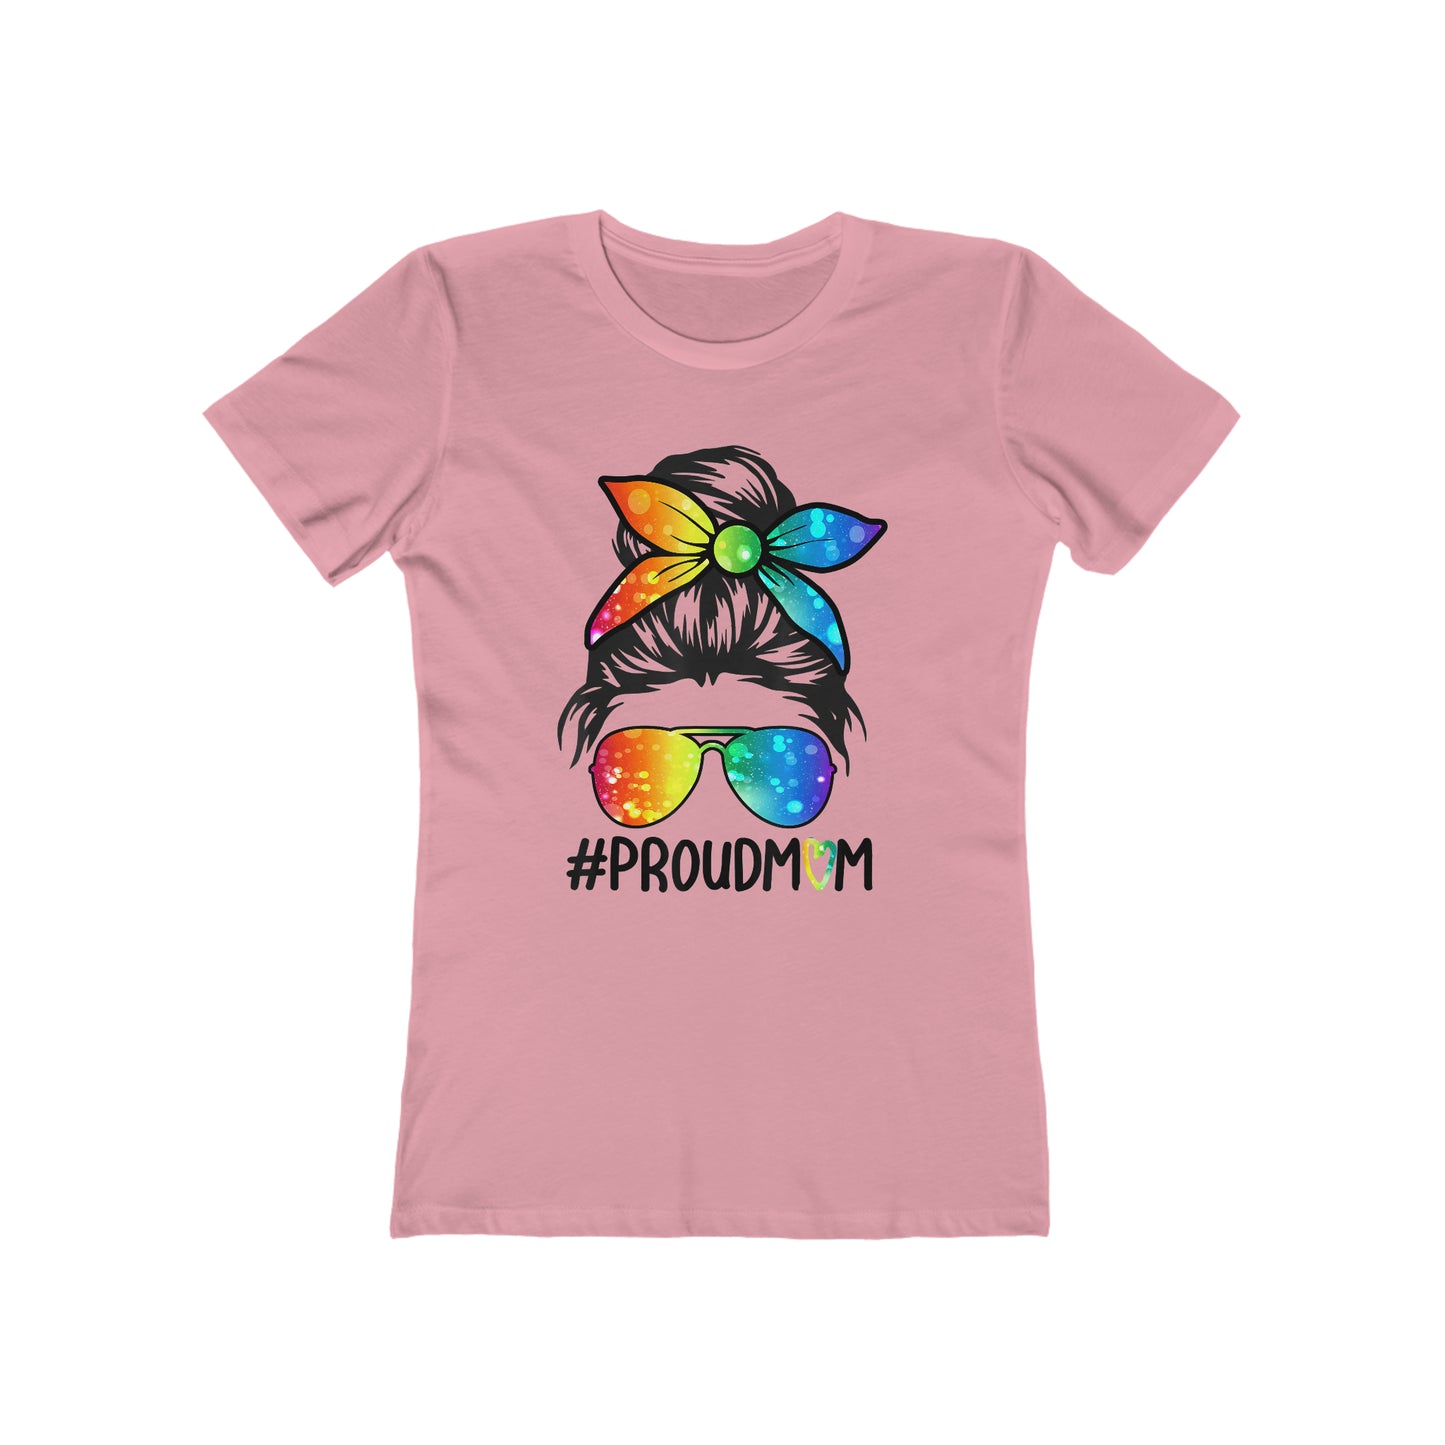 Proud Mom - Women's T-shirt